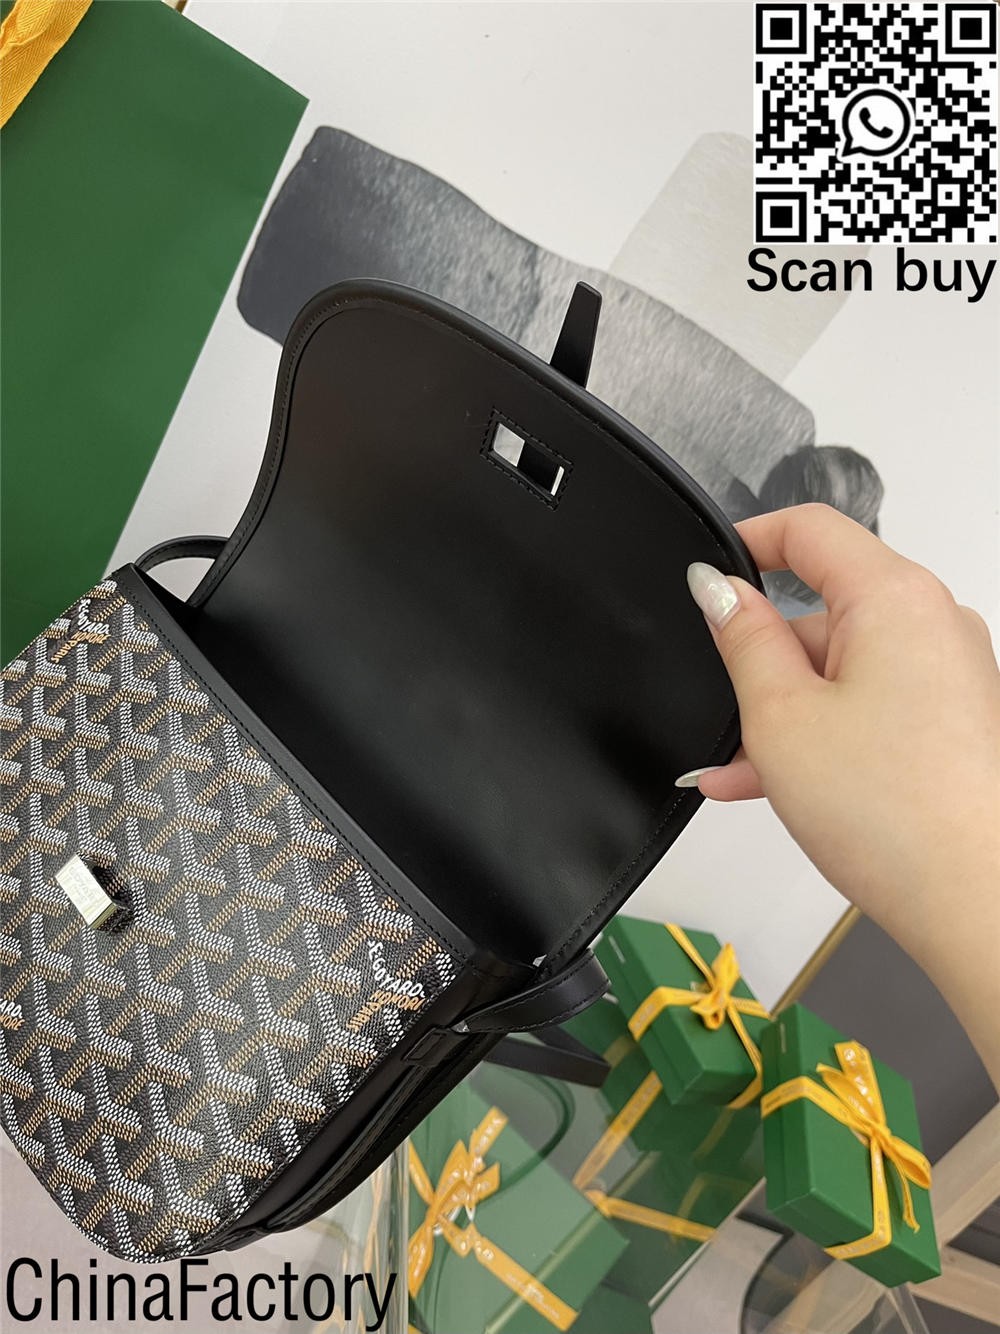 Ako kúpiť repliku pánskej tašky Goyard z Filipín? (najnovšie z roku 2022) – online obchod s falošnou taškou Louis Vuitton najvyššej kvality, replika značkovej tašky ru